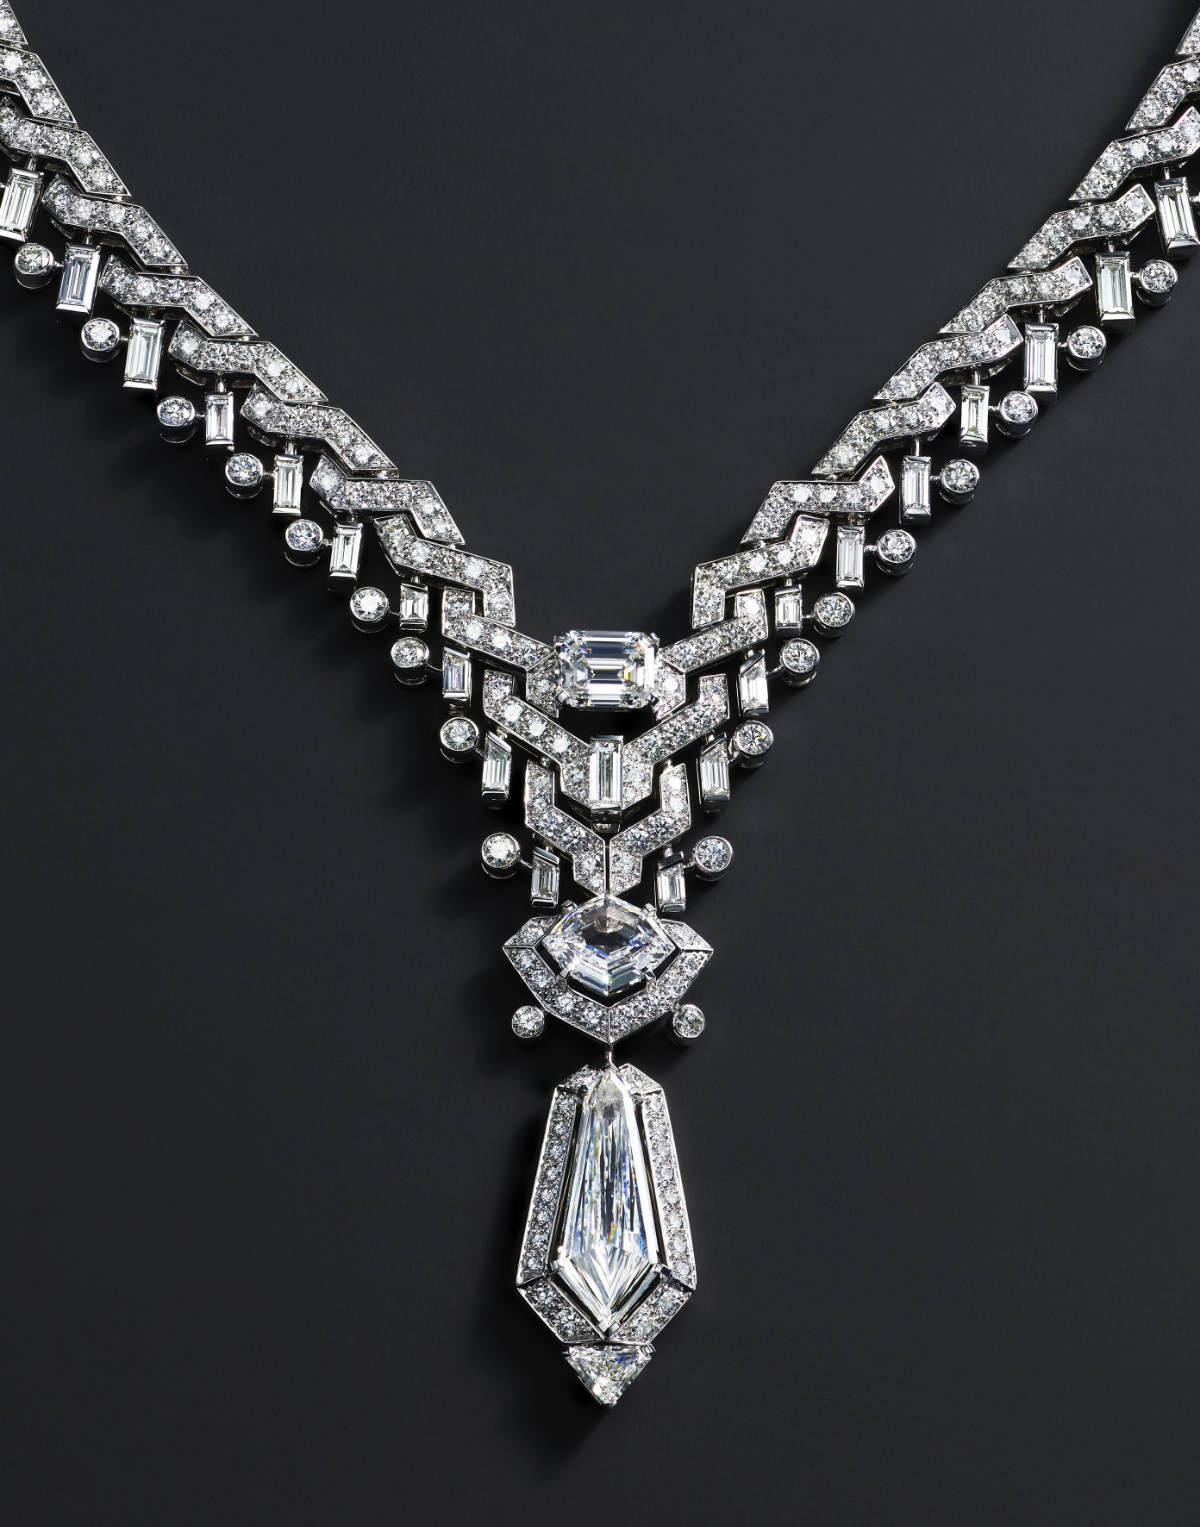 The New High Jewellery Collection: Sixiéme Sens Par Cartier